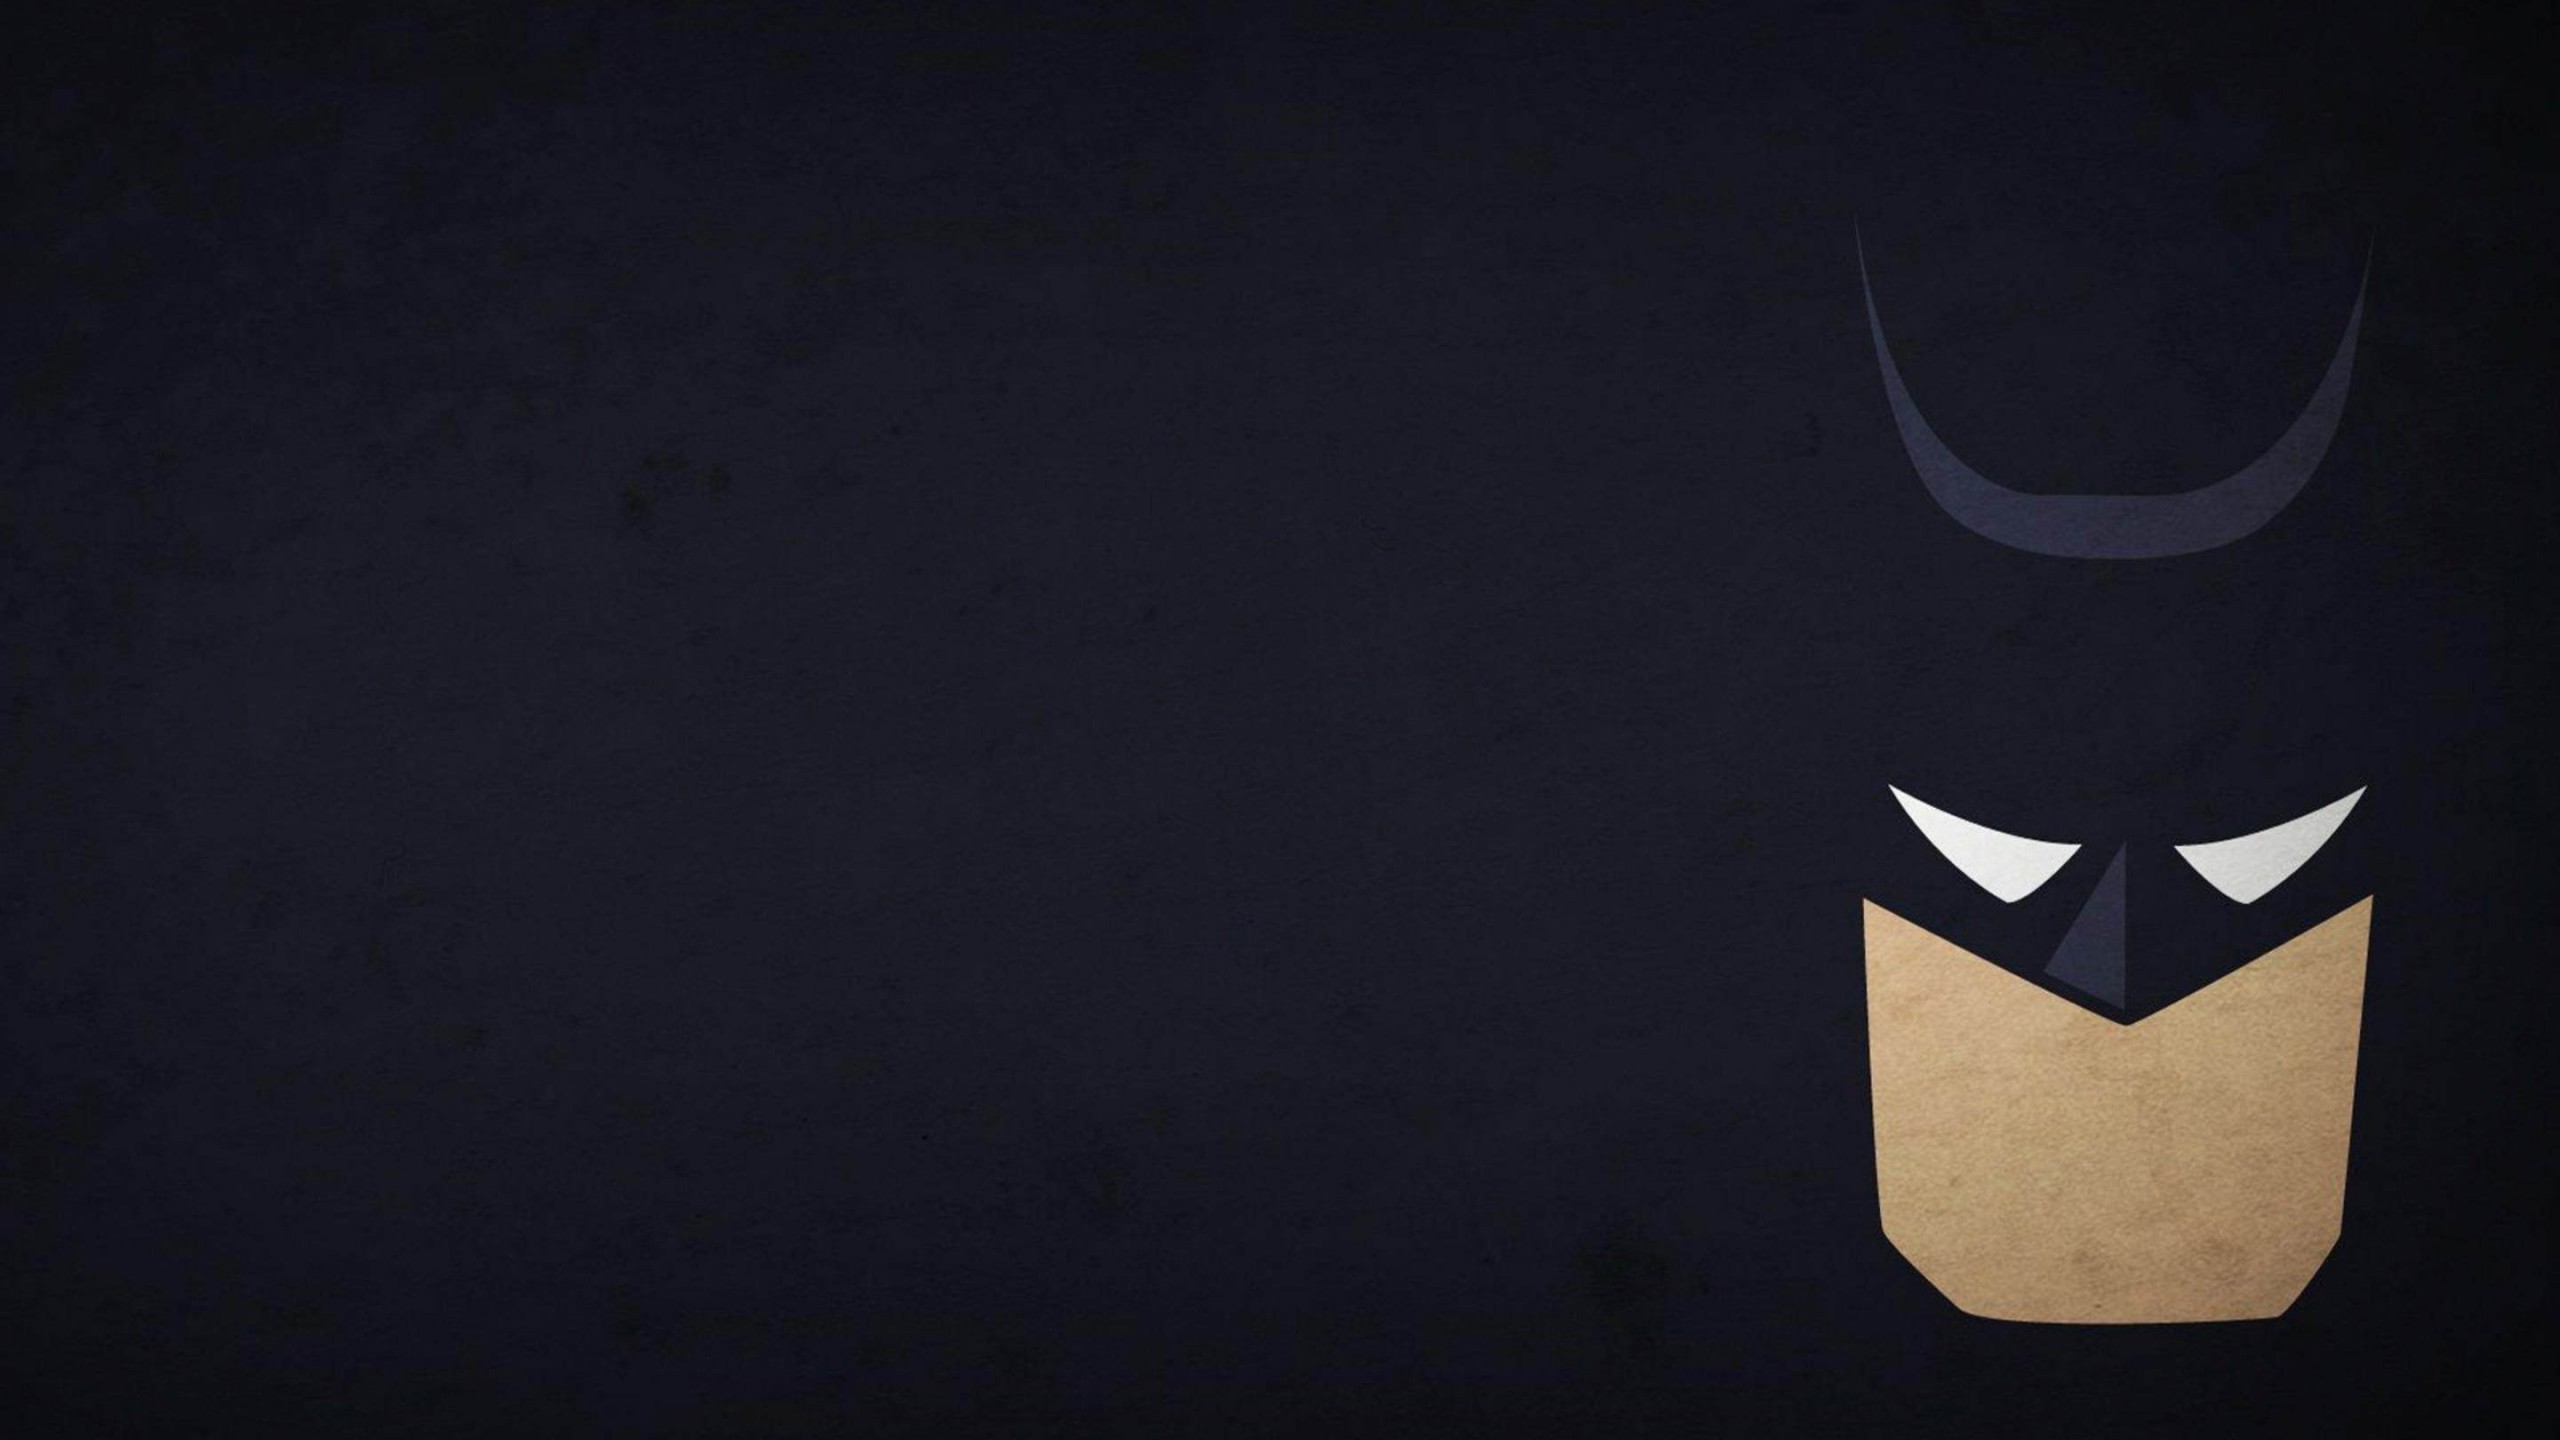 2560x1440 Batman Artwork HD wallpaper for 2560 x 1440 - HDwallpapers.net